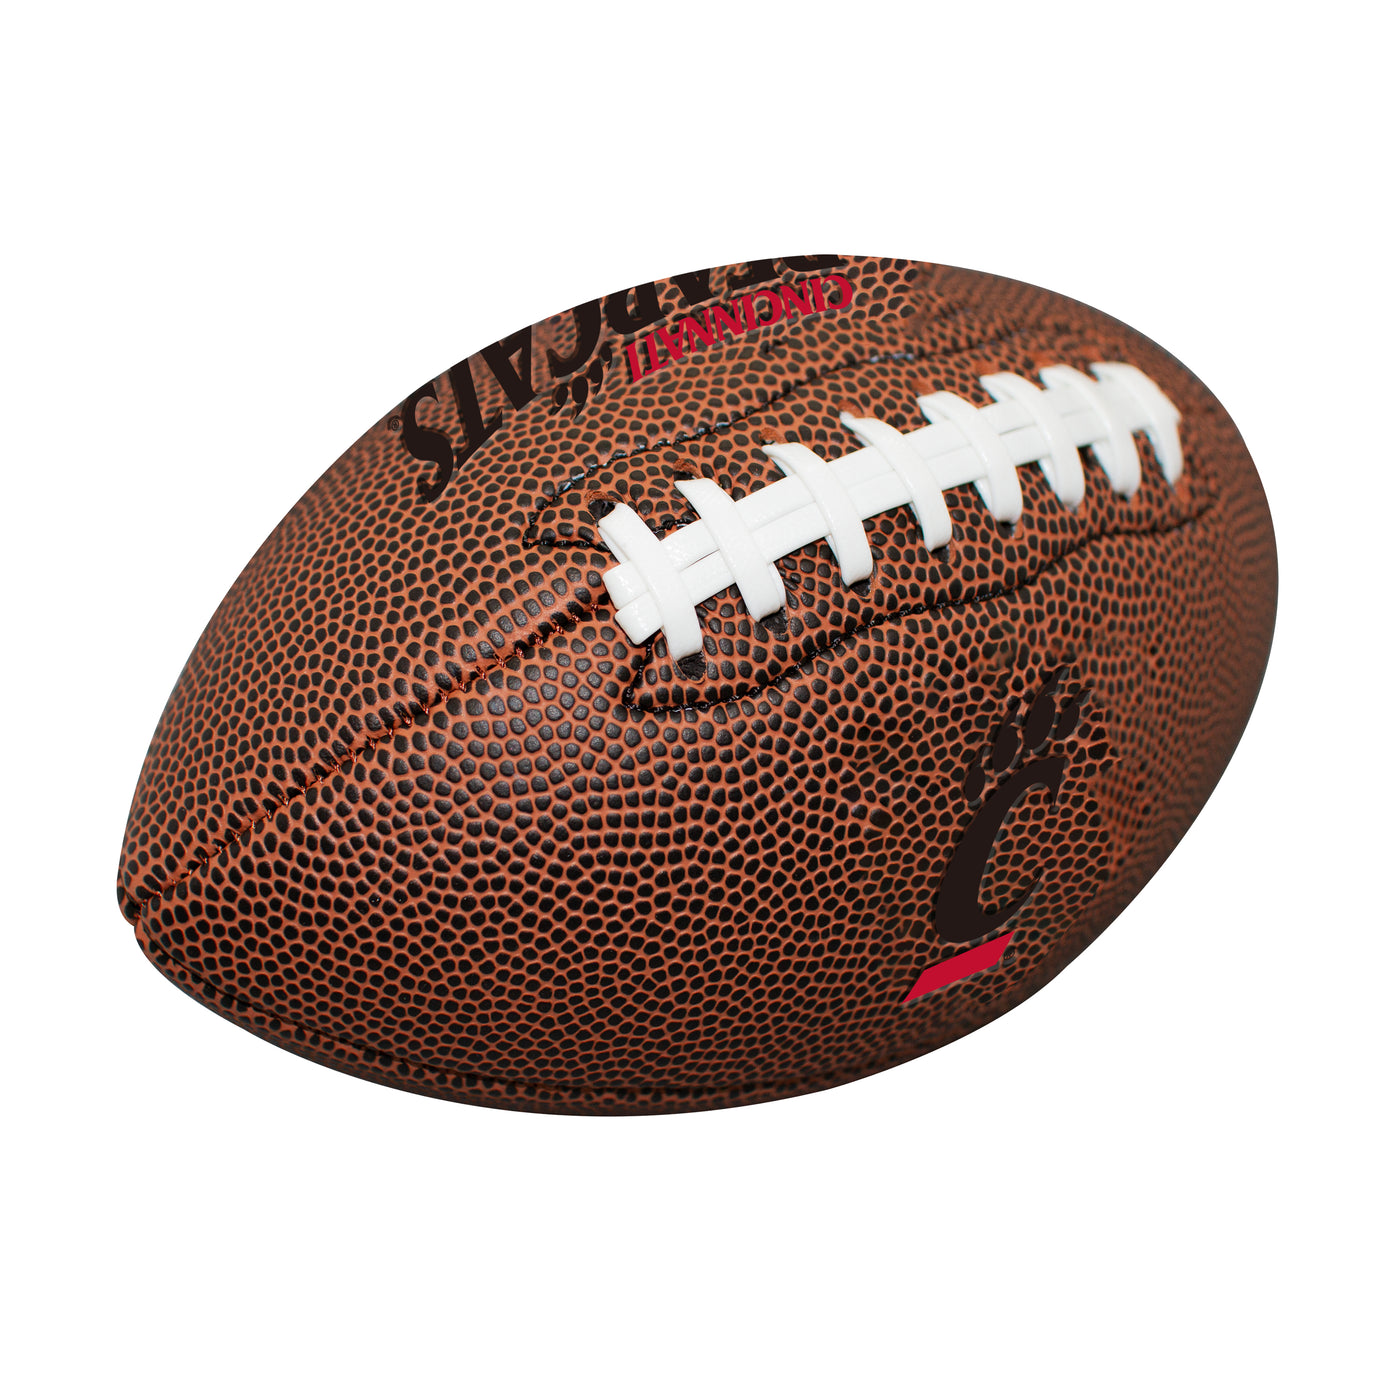 Cincinnati Mini Size Composite Football